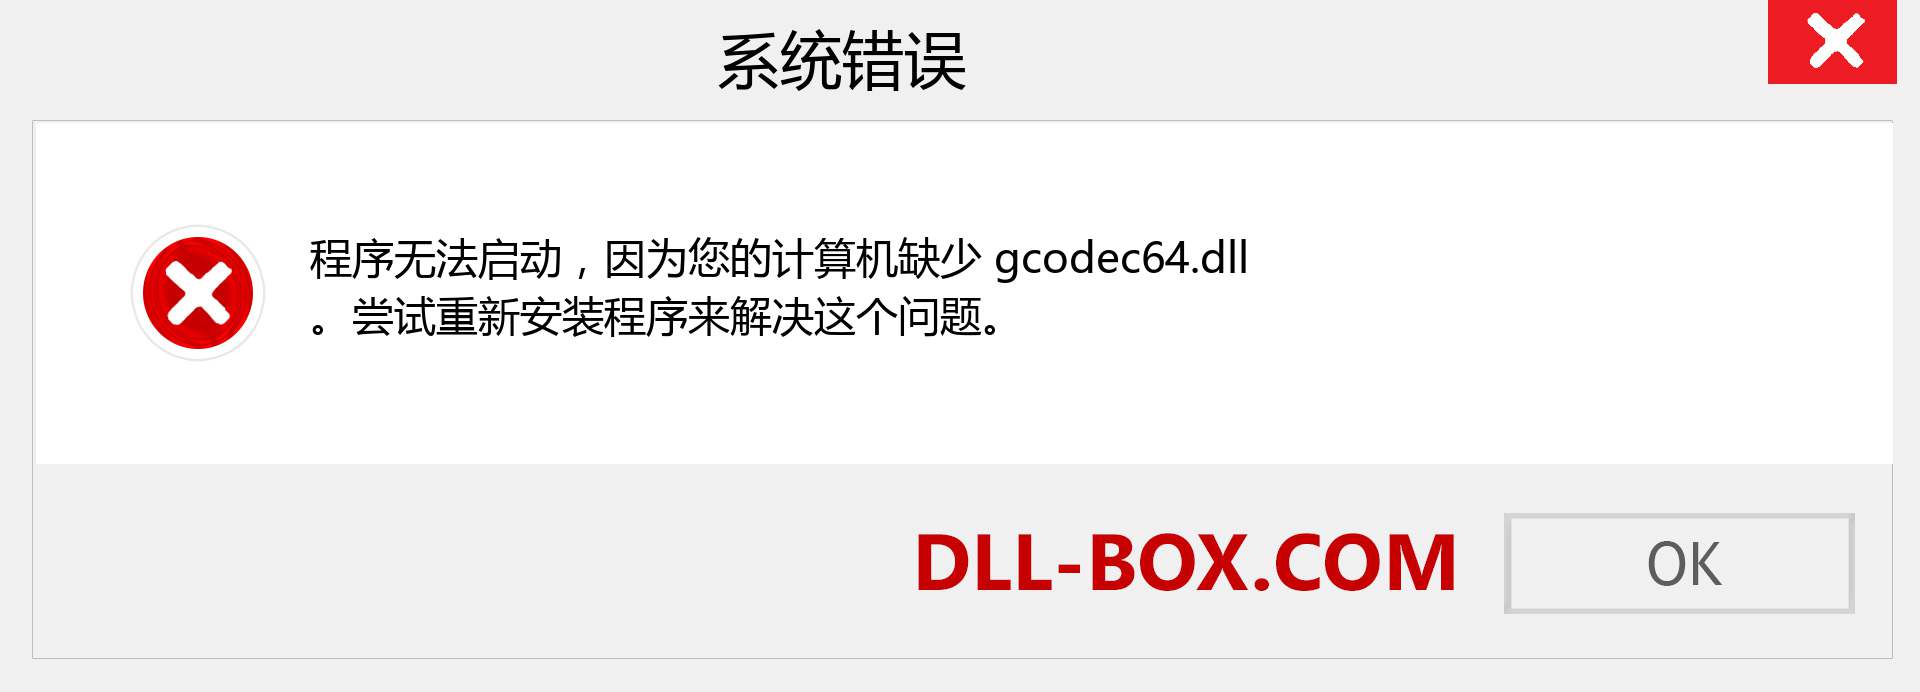 gcodec64.dll 文件丢失？。 适用于 Windows 7、8、10 的下载 - 修复 Windows、照片、图像上的 gcodec64 dll 丢失错误